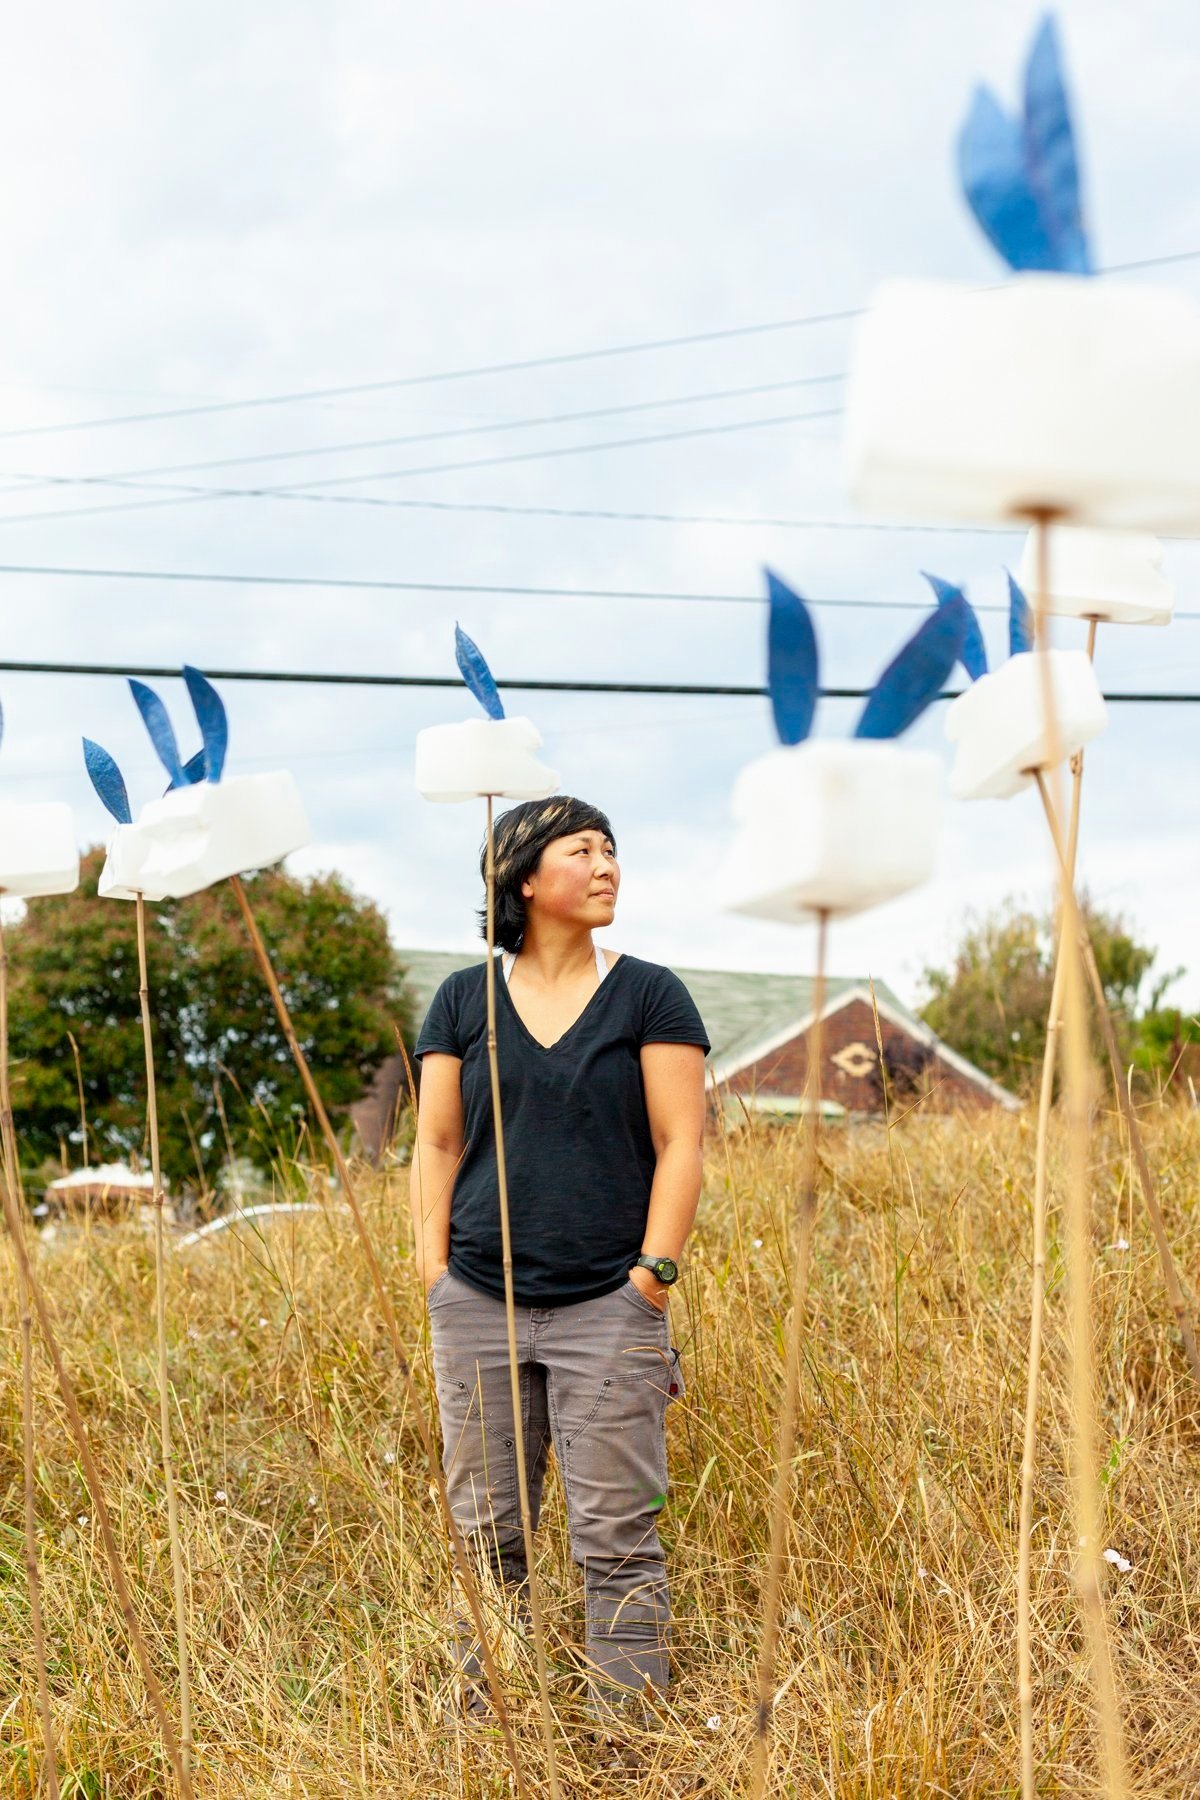 Artist JoEllen Wang standing in her public art installation "Camper Fluffle", Seattle WA